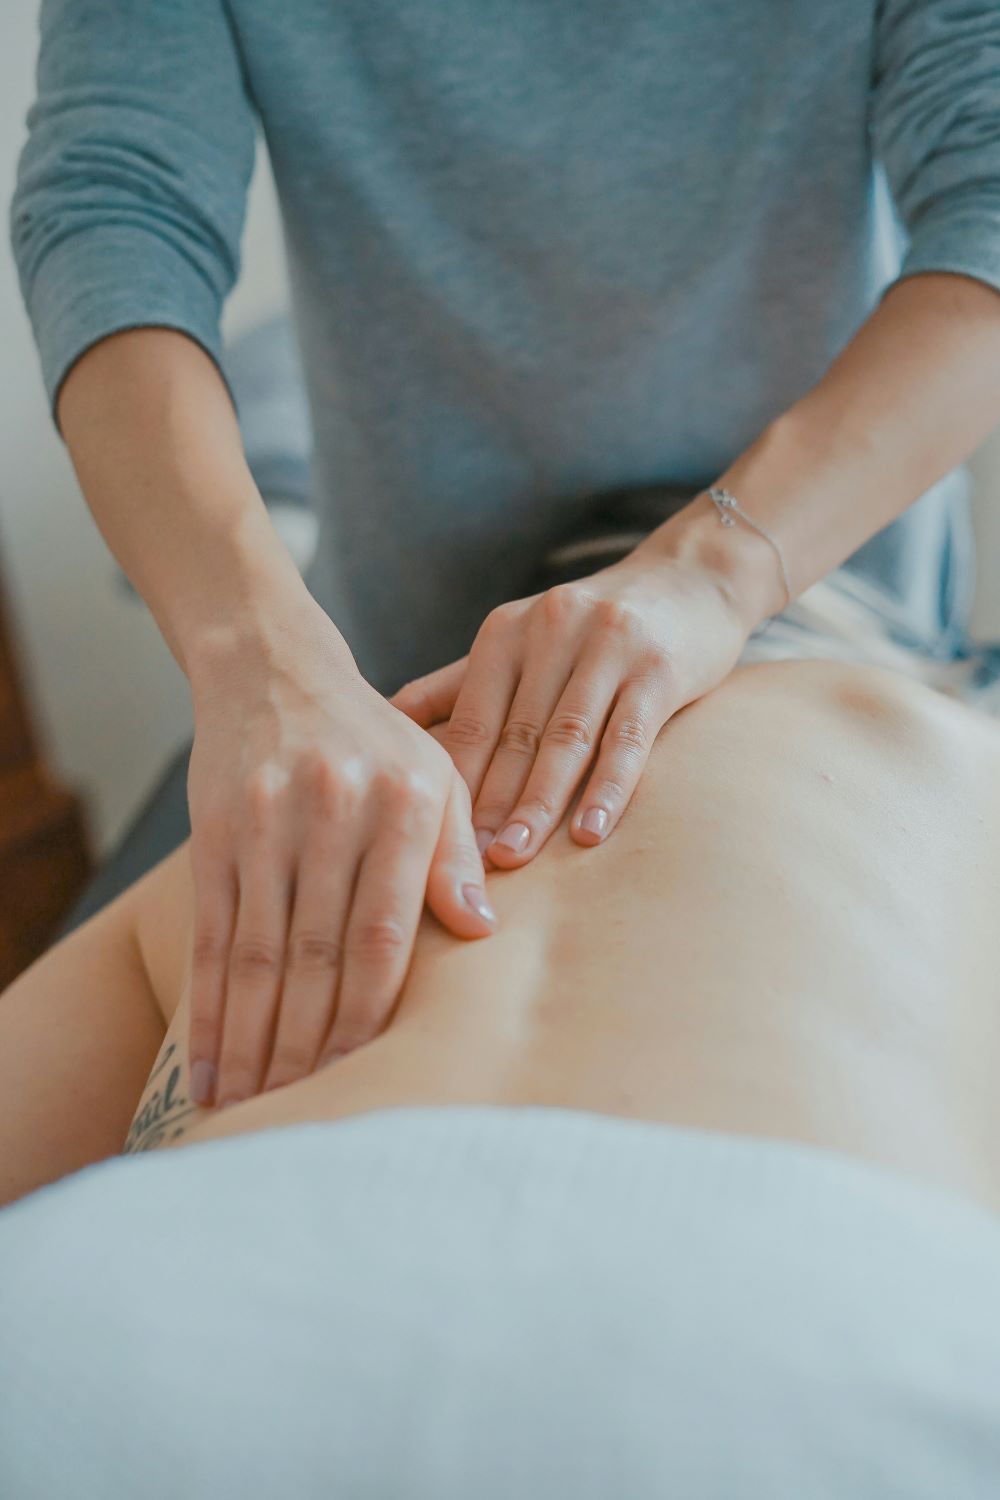 Fyzioterapeut provádí masáž pomocí měkkých technik.